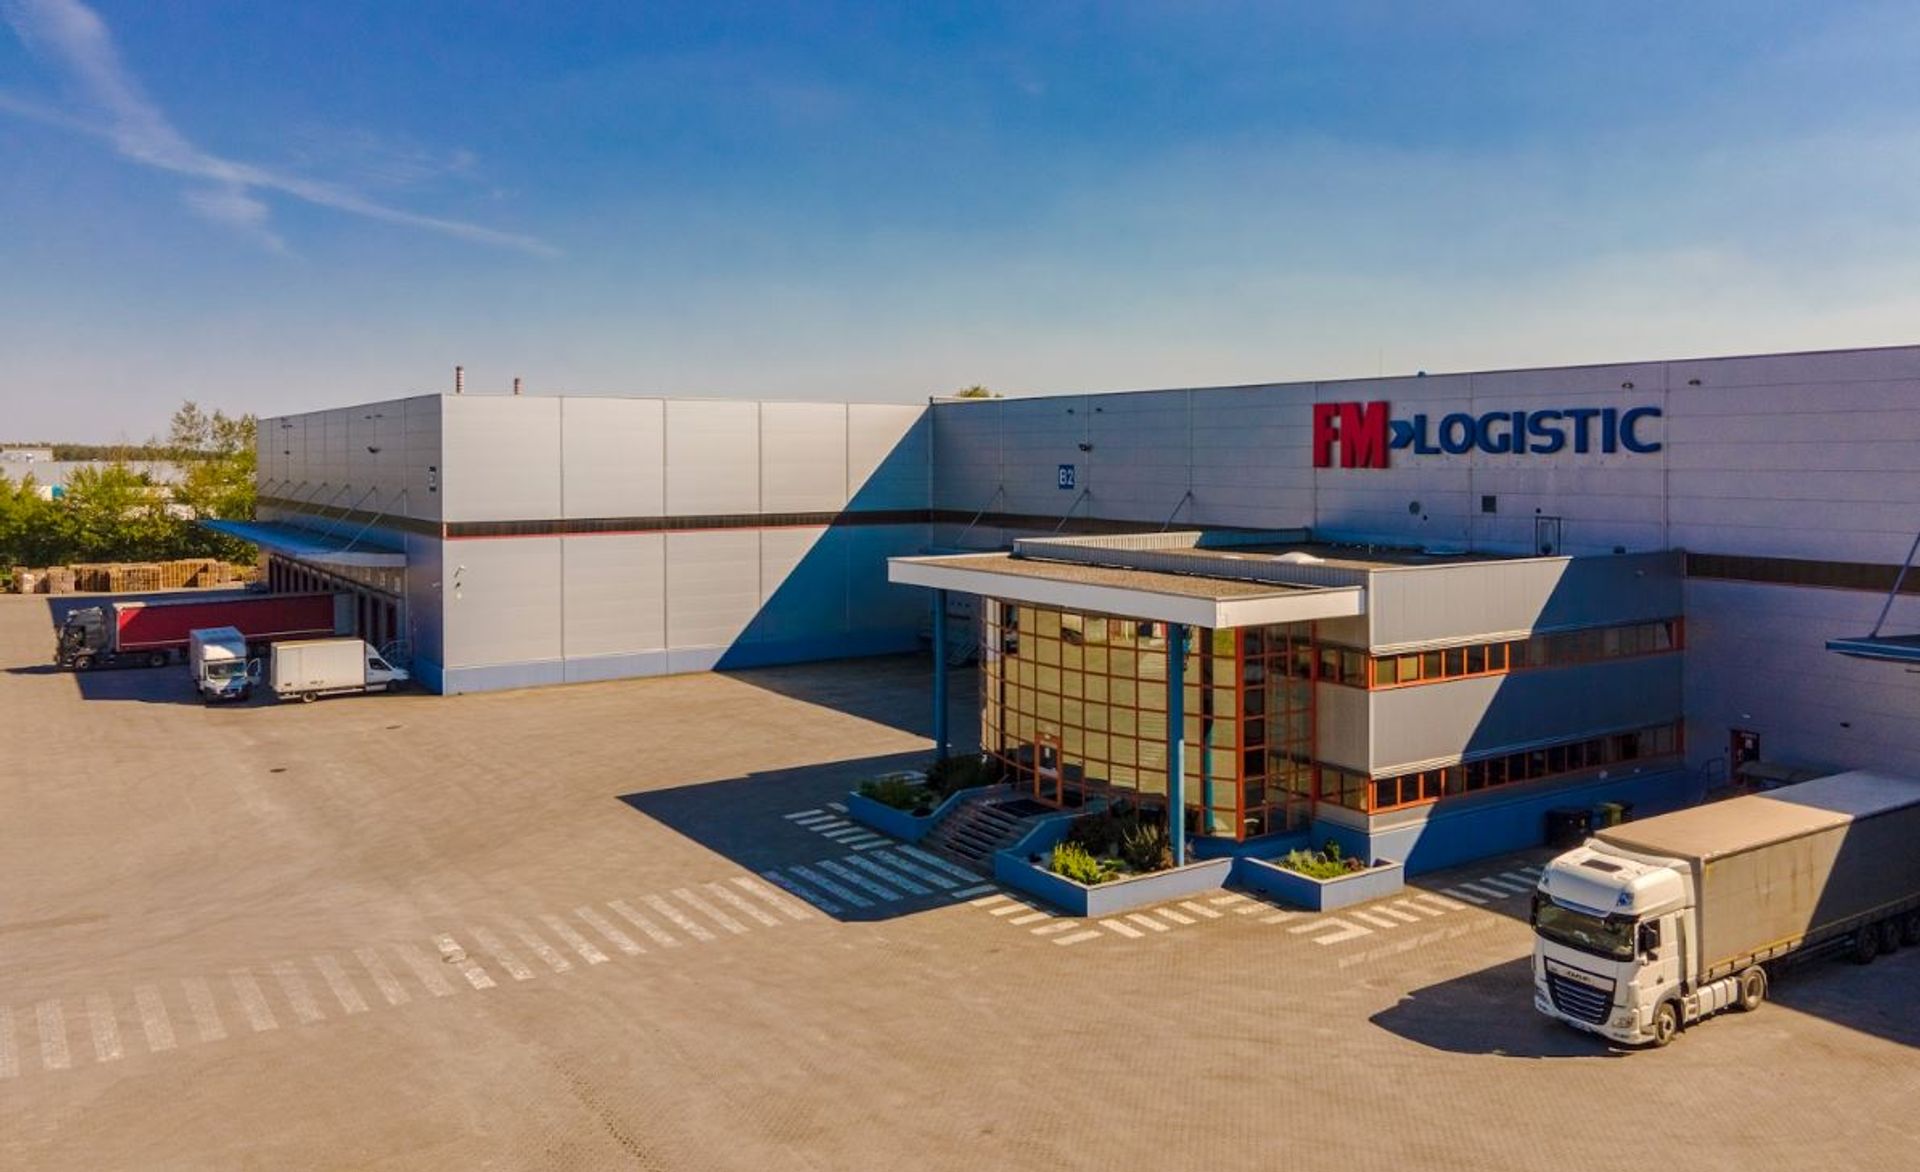 Bezpośrednie inwestycje zagraniczne w Polsce napędzają rynek logistyczny